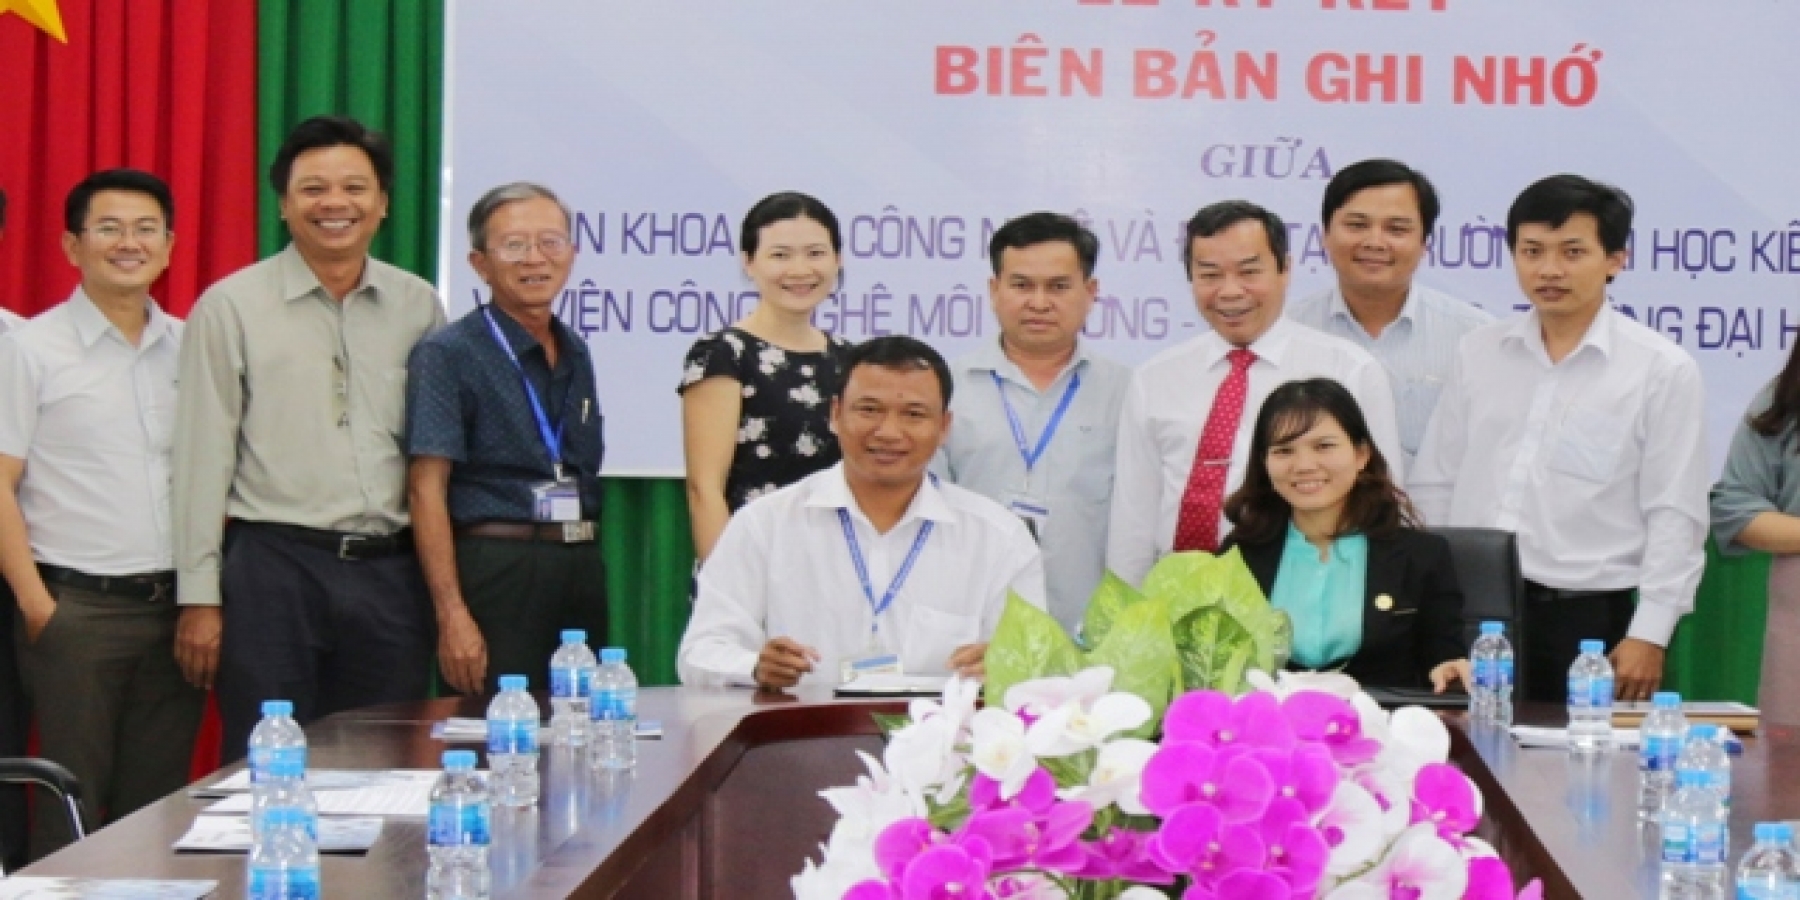 Tập đoàn ICOGroup – Chi nhánh Cà Mau và Viện Khoa hoc Công nghệ và Đào tạo, Trường Đại học Kiên Giang ký kết biên bản ghi nhớ